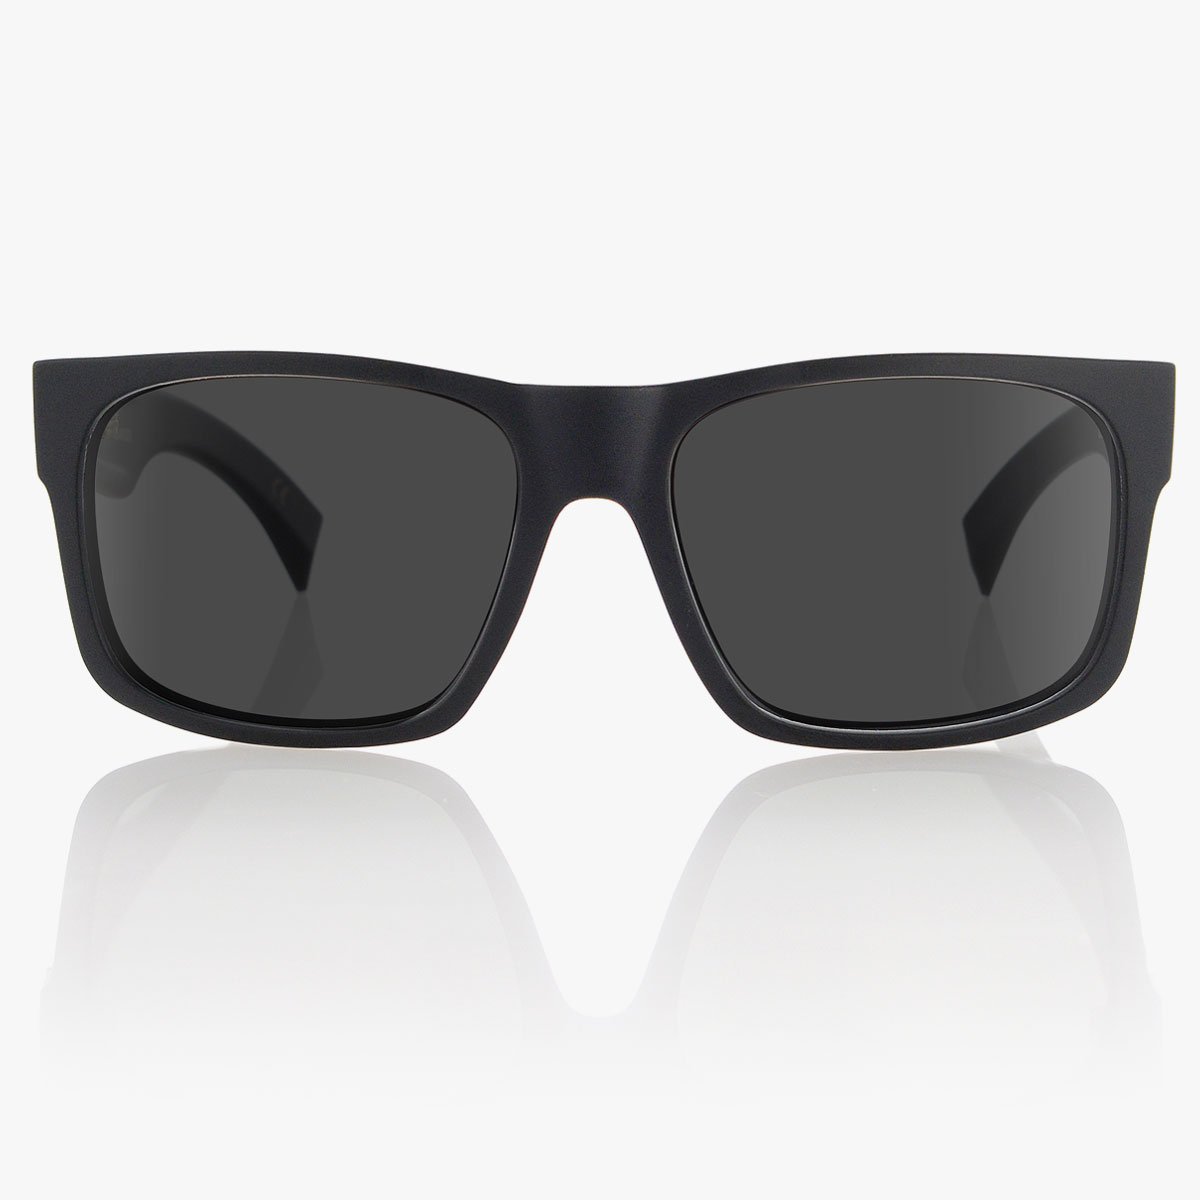 Camino Prescription Sunglasses in Black on Black for Men | Madson ...